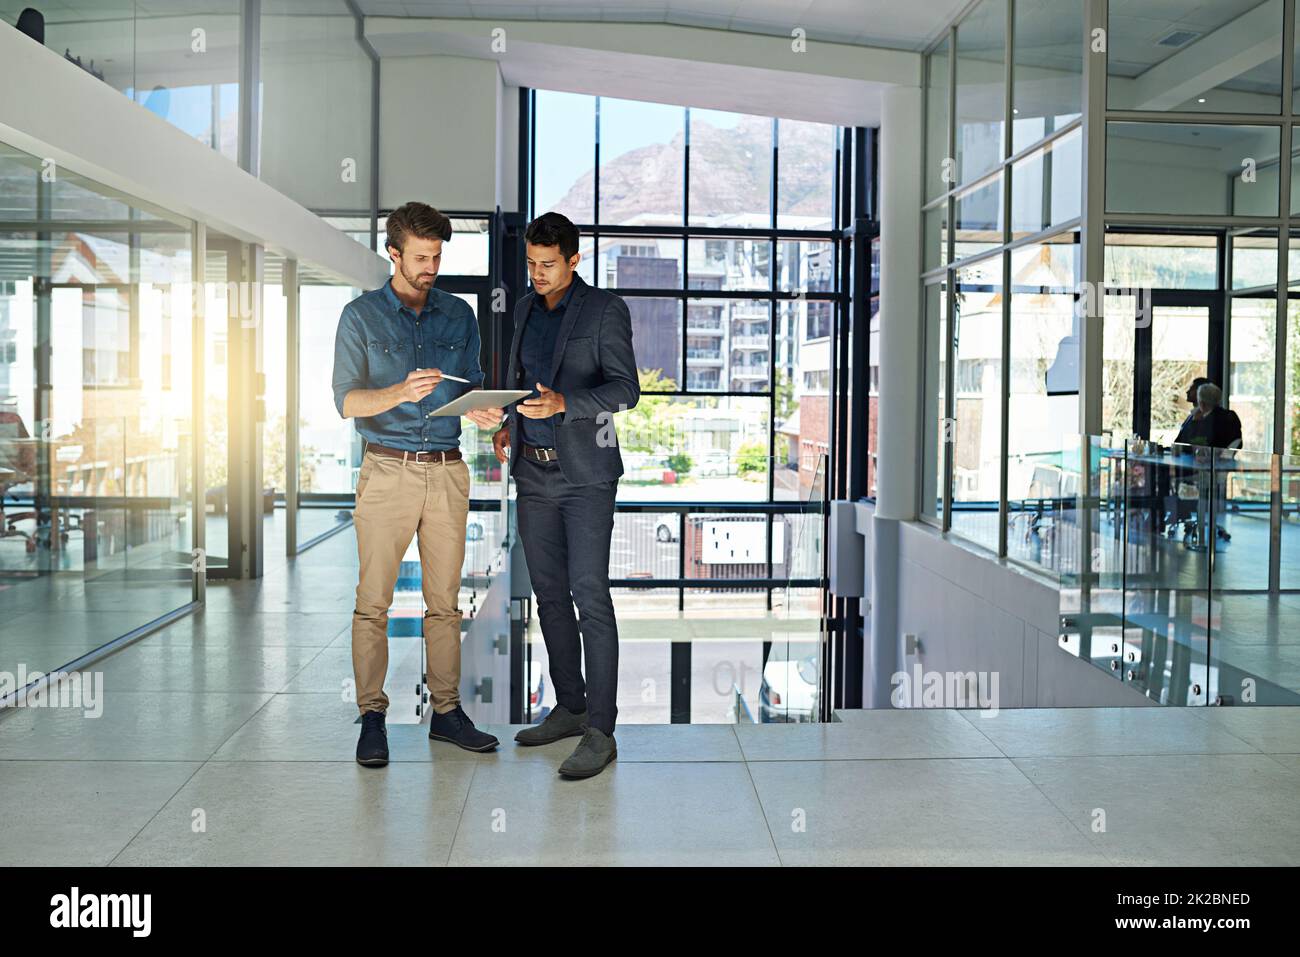 Sie arbeiten an allen großen Projekten zusammen. Aufnahme von zwei Kollegen, die sich über ein digitales Tablet unterhalten, während sie in einem modernen Büro stehen. Stockfoto